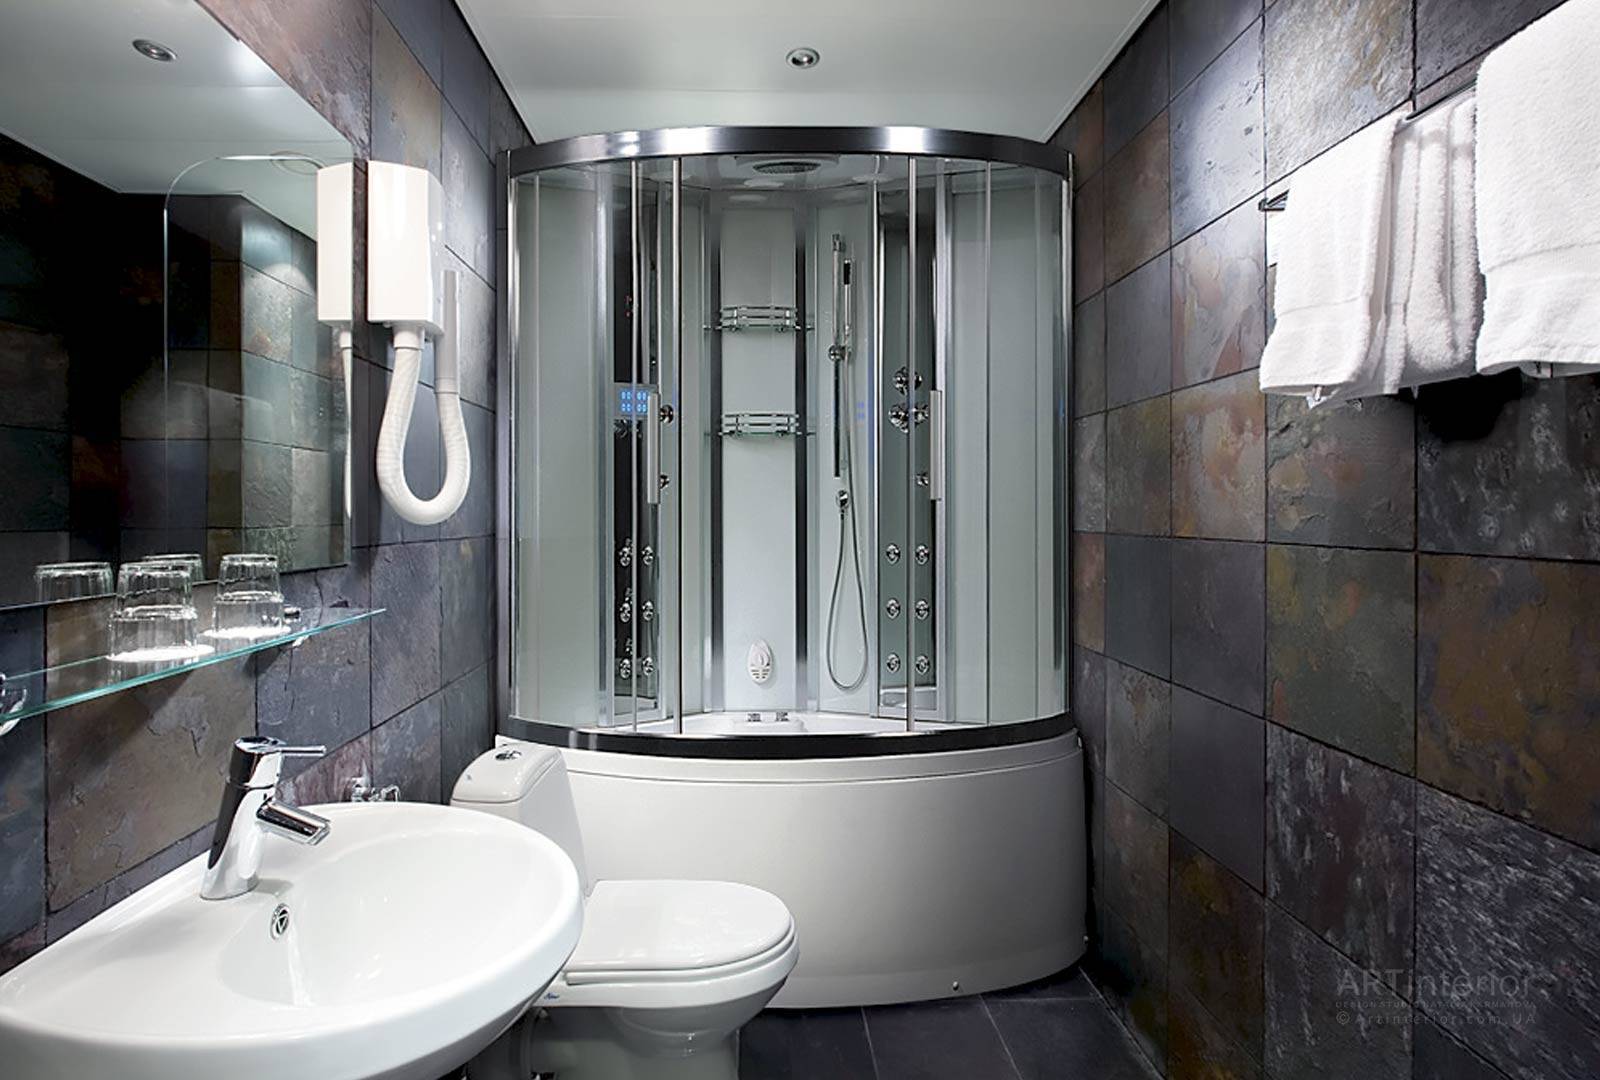 Ванная с душевой кабиной (75 фото): дизайн интерьера, идеи ремонта и отделки